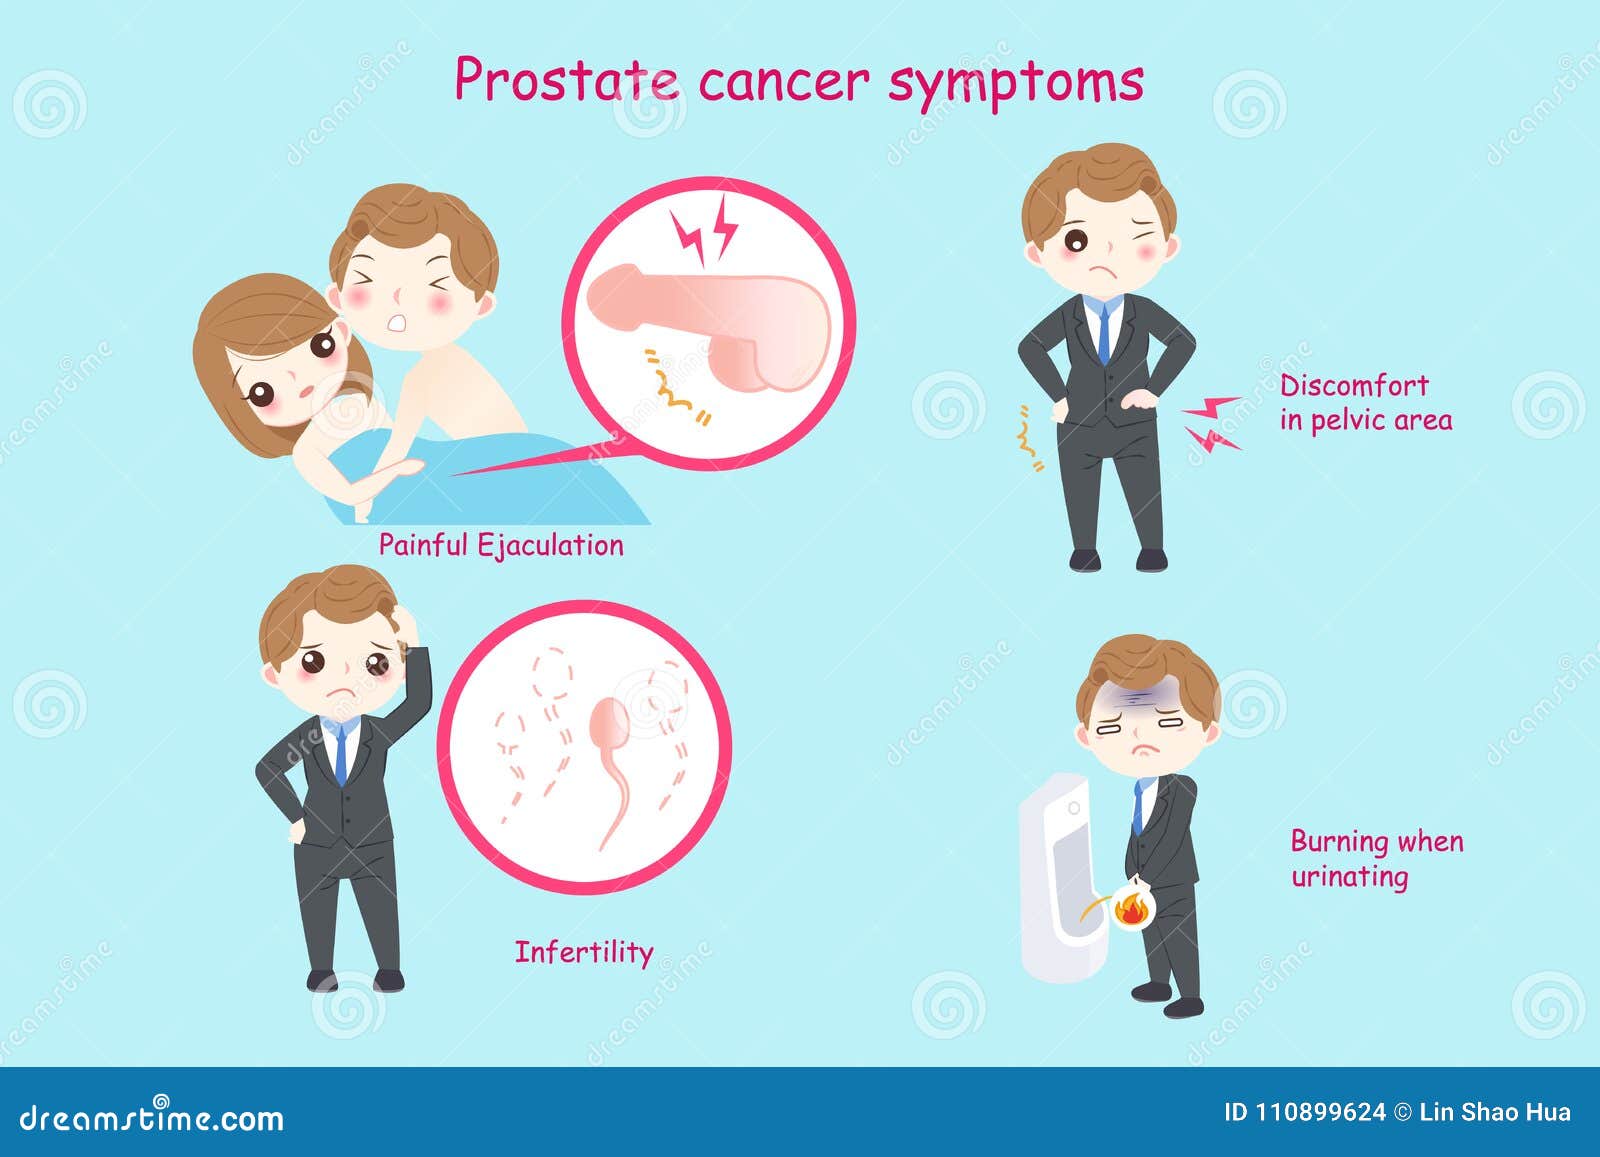 câncer de próstata sintomas fotos